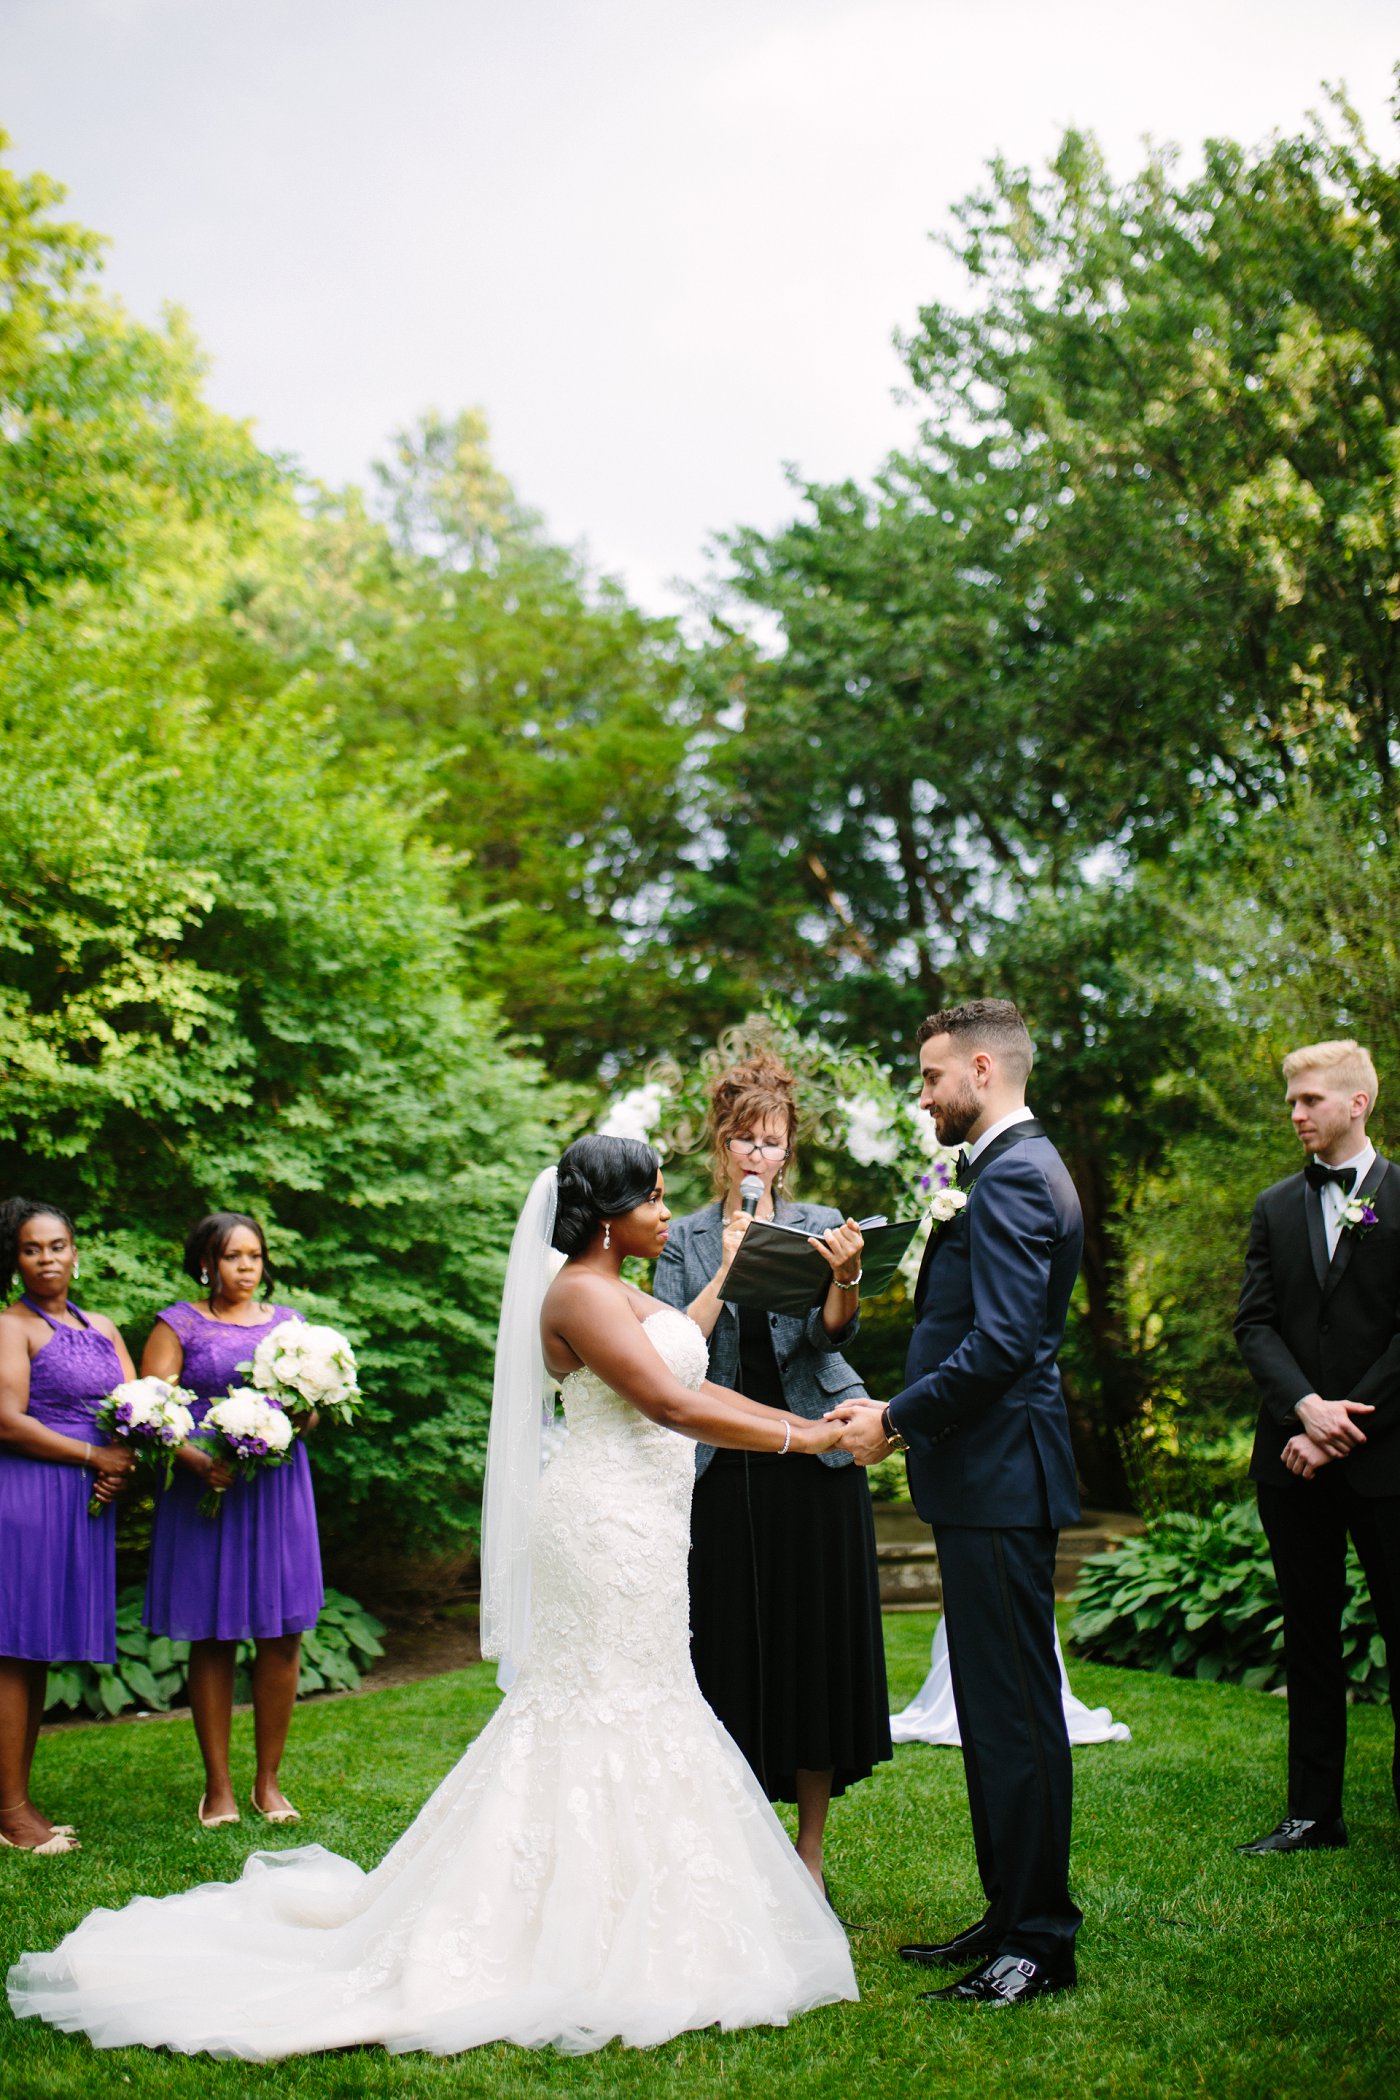 bride and groom wedding ceremony in outdoor venue